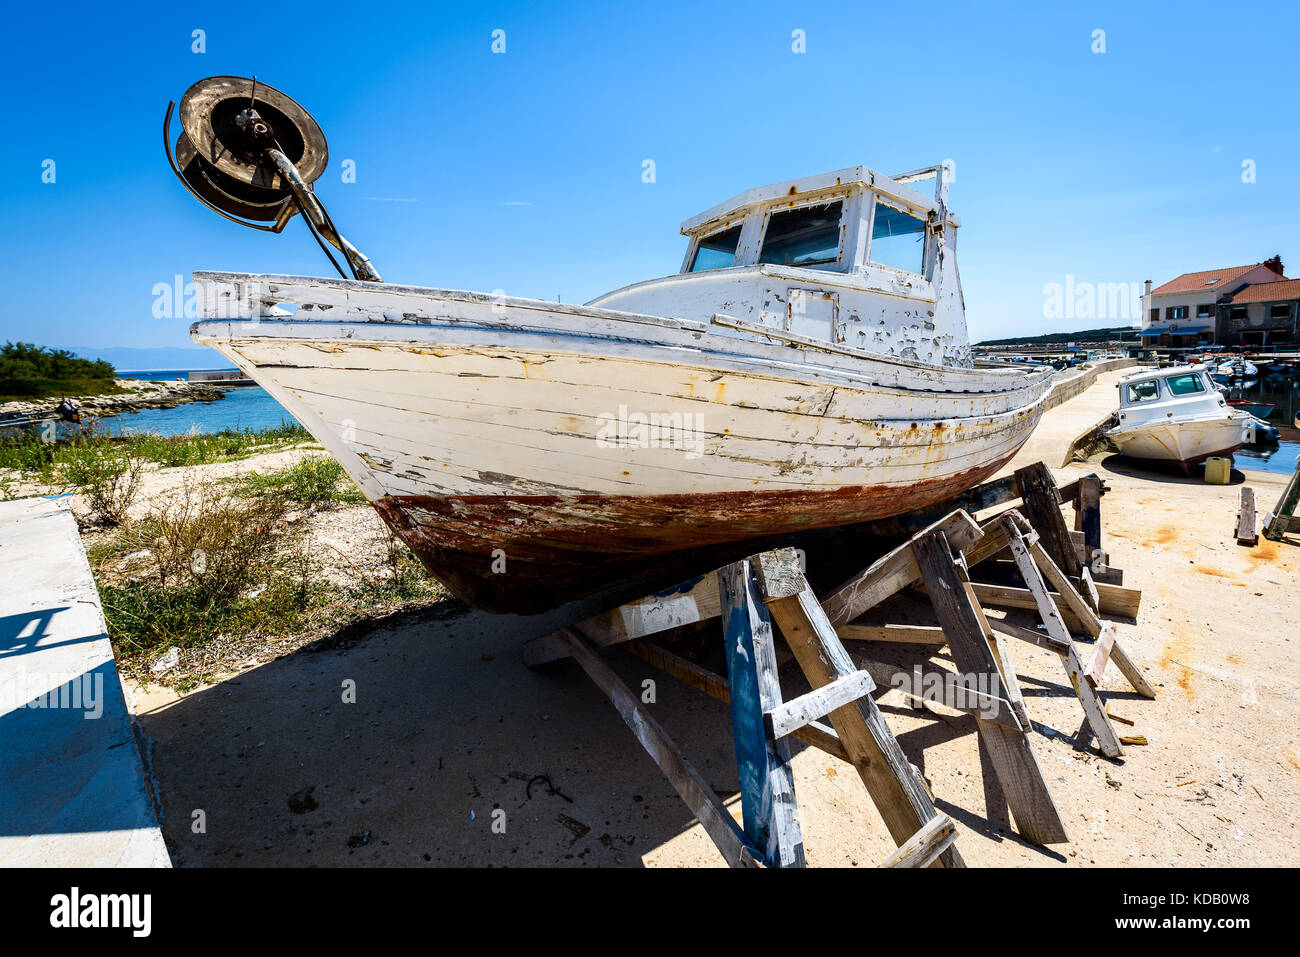 Reparatur und Restauration von alten hölzernen Angeln Schiff oder Boot.  alte verwitterte Fischerboot montiert auf Holz- Buchsen für Dry Dock  Renovierung und Reparatur mit Stockfotografie - Alamy